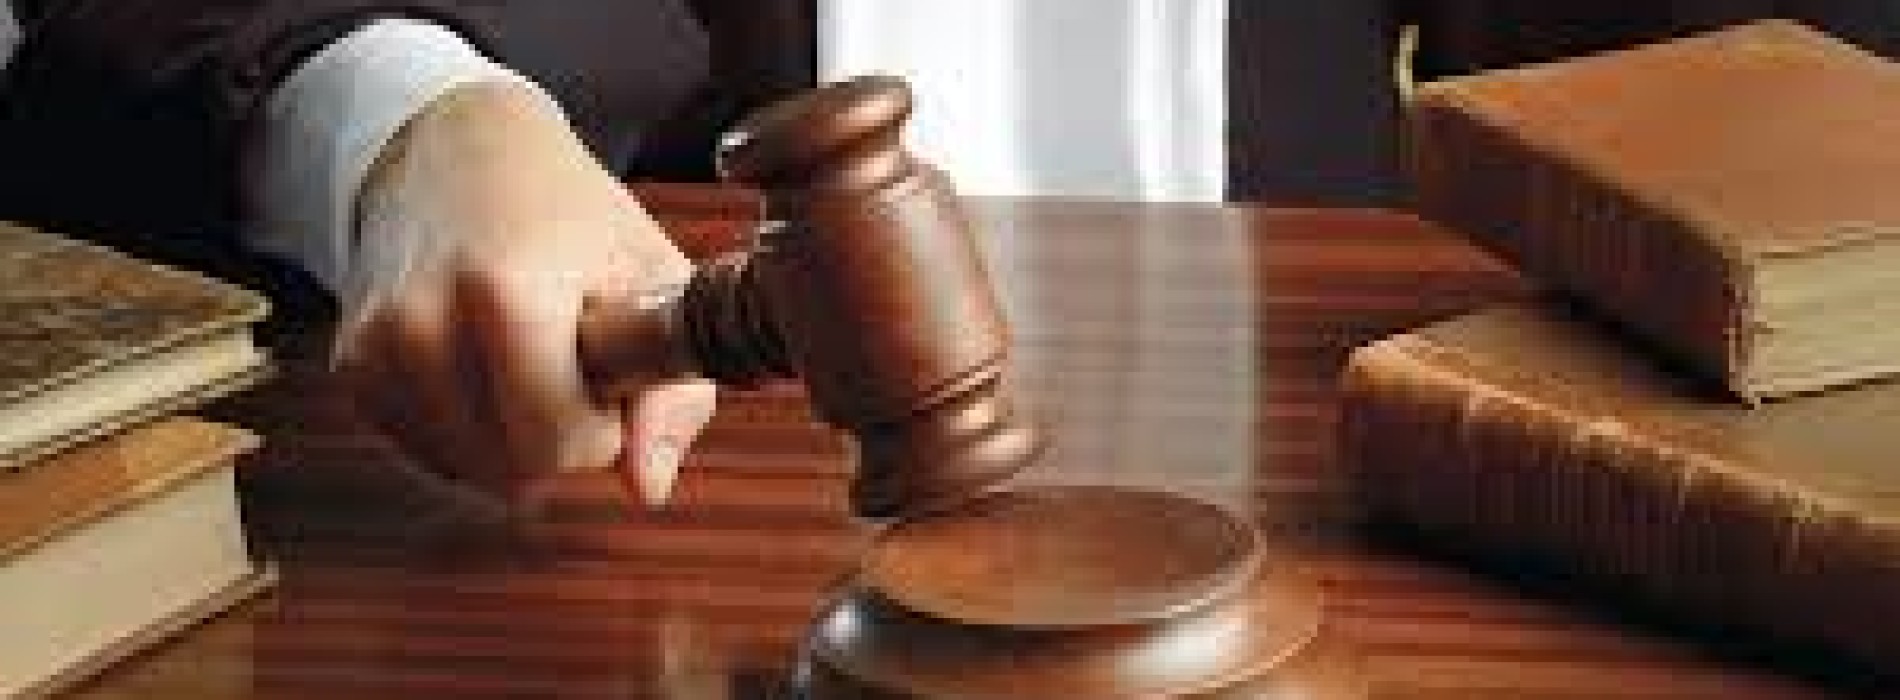 Суд отказал предпринимателю в отмене внеплановой прокурорской проверки   